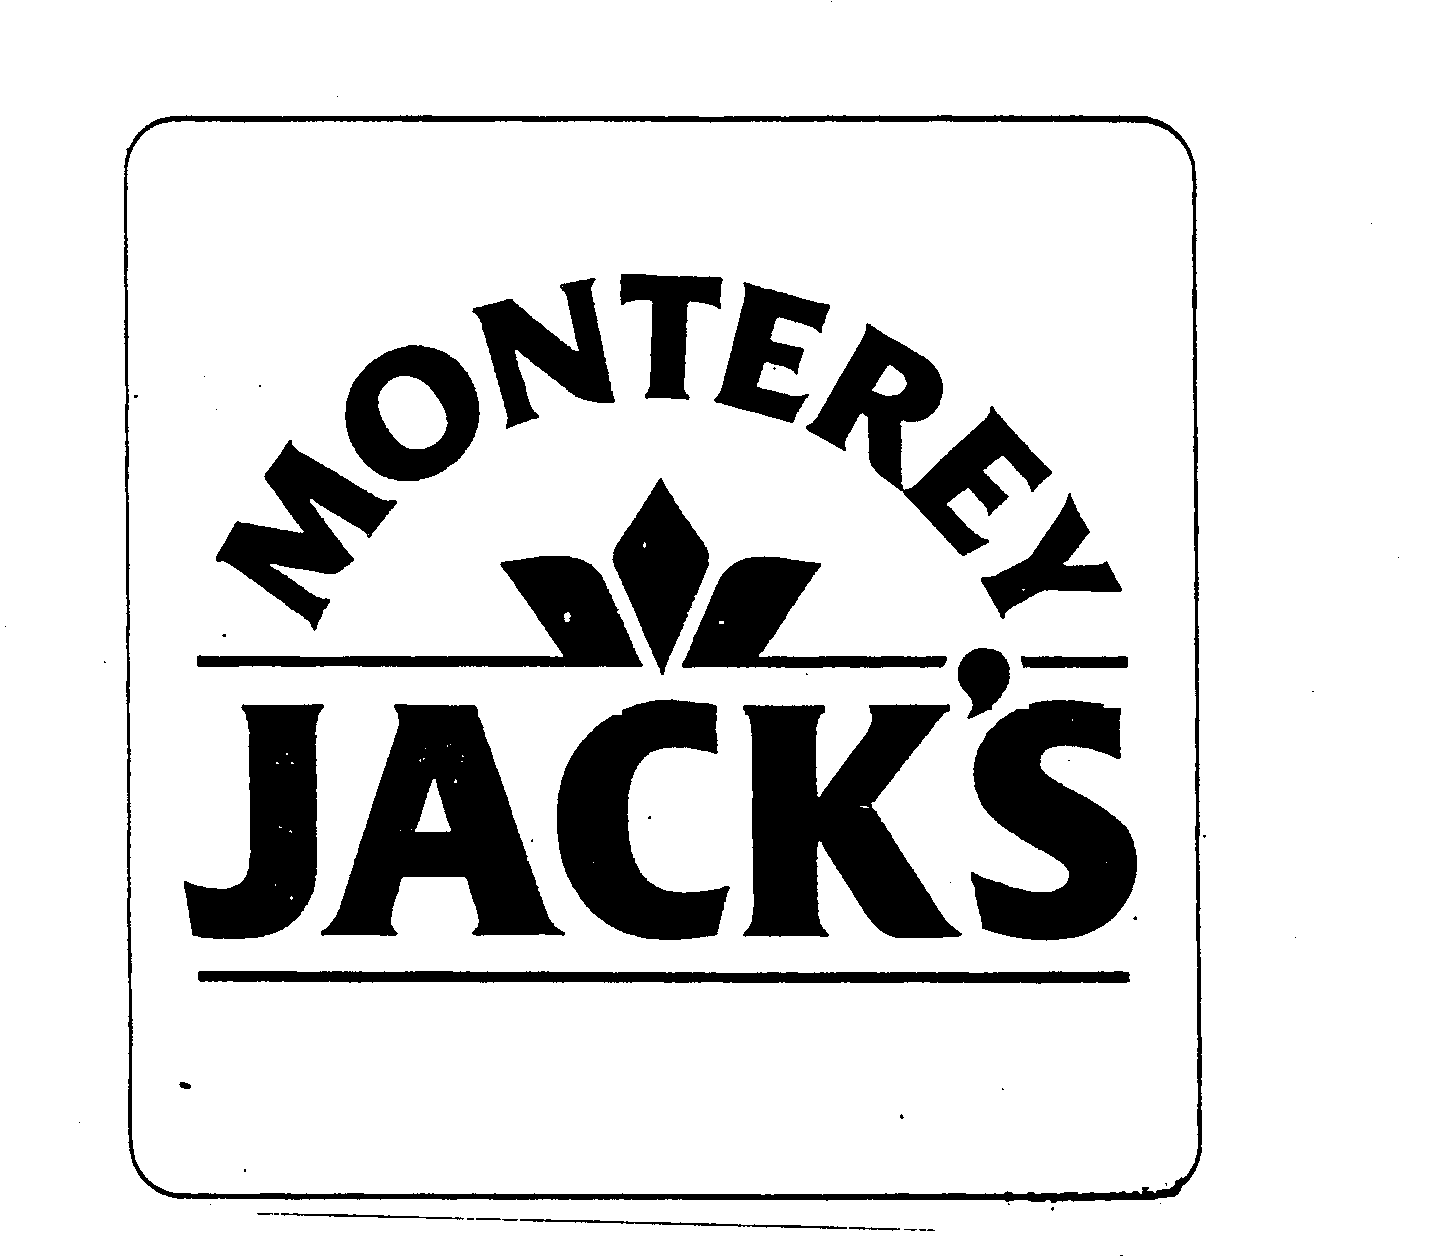  MONTEREY JACK'S